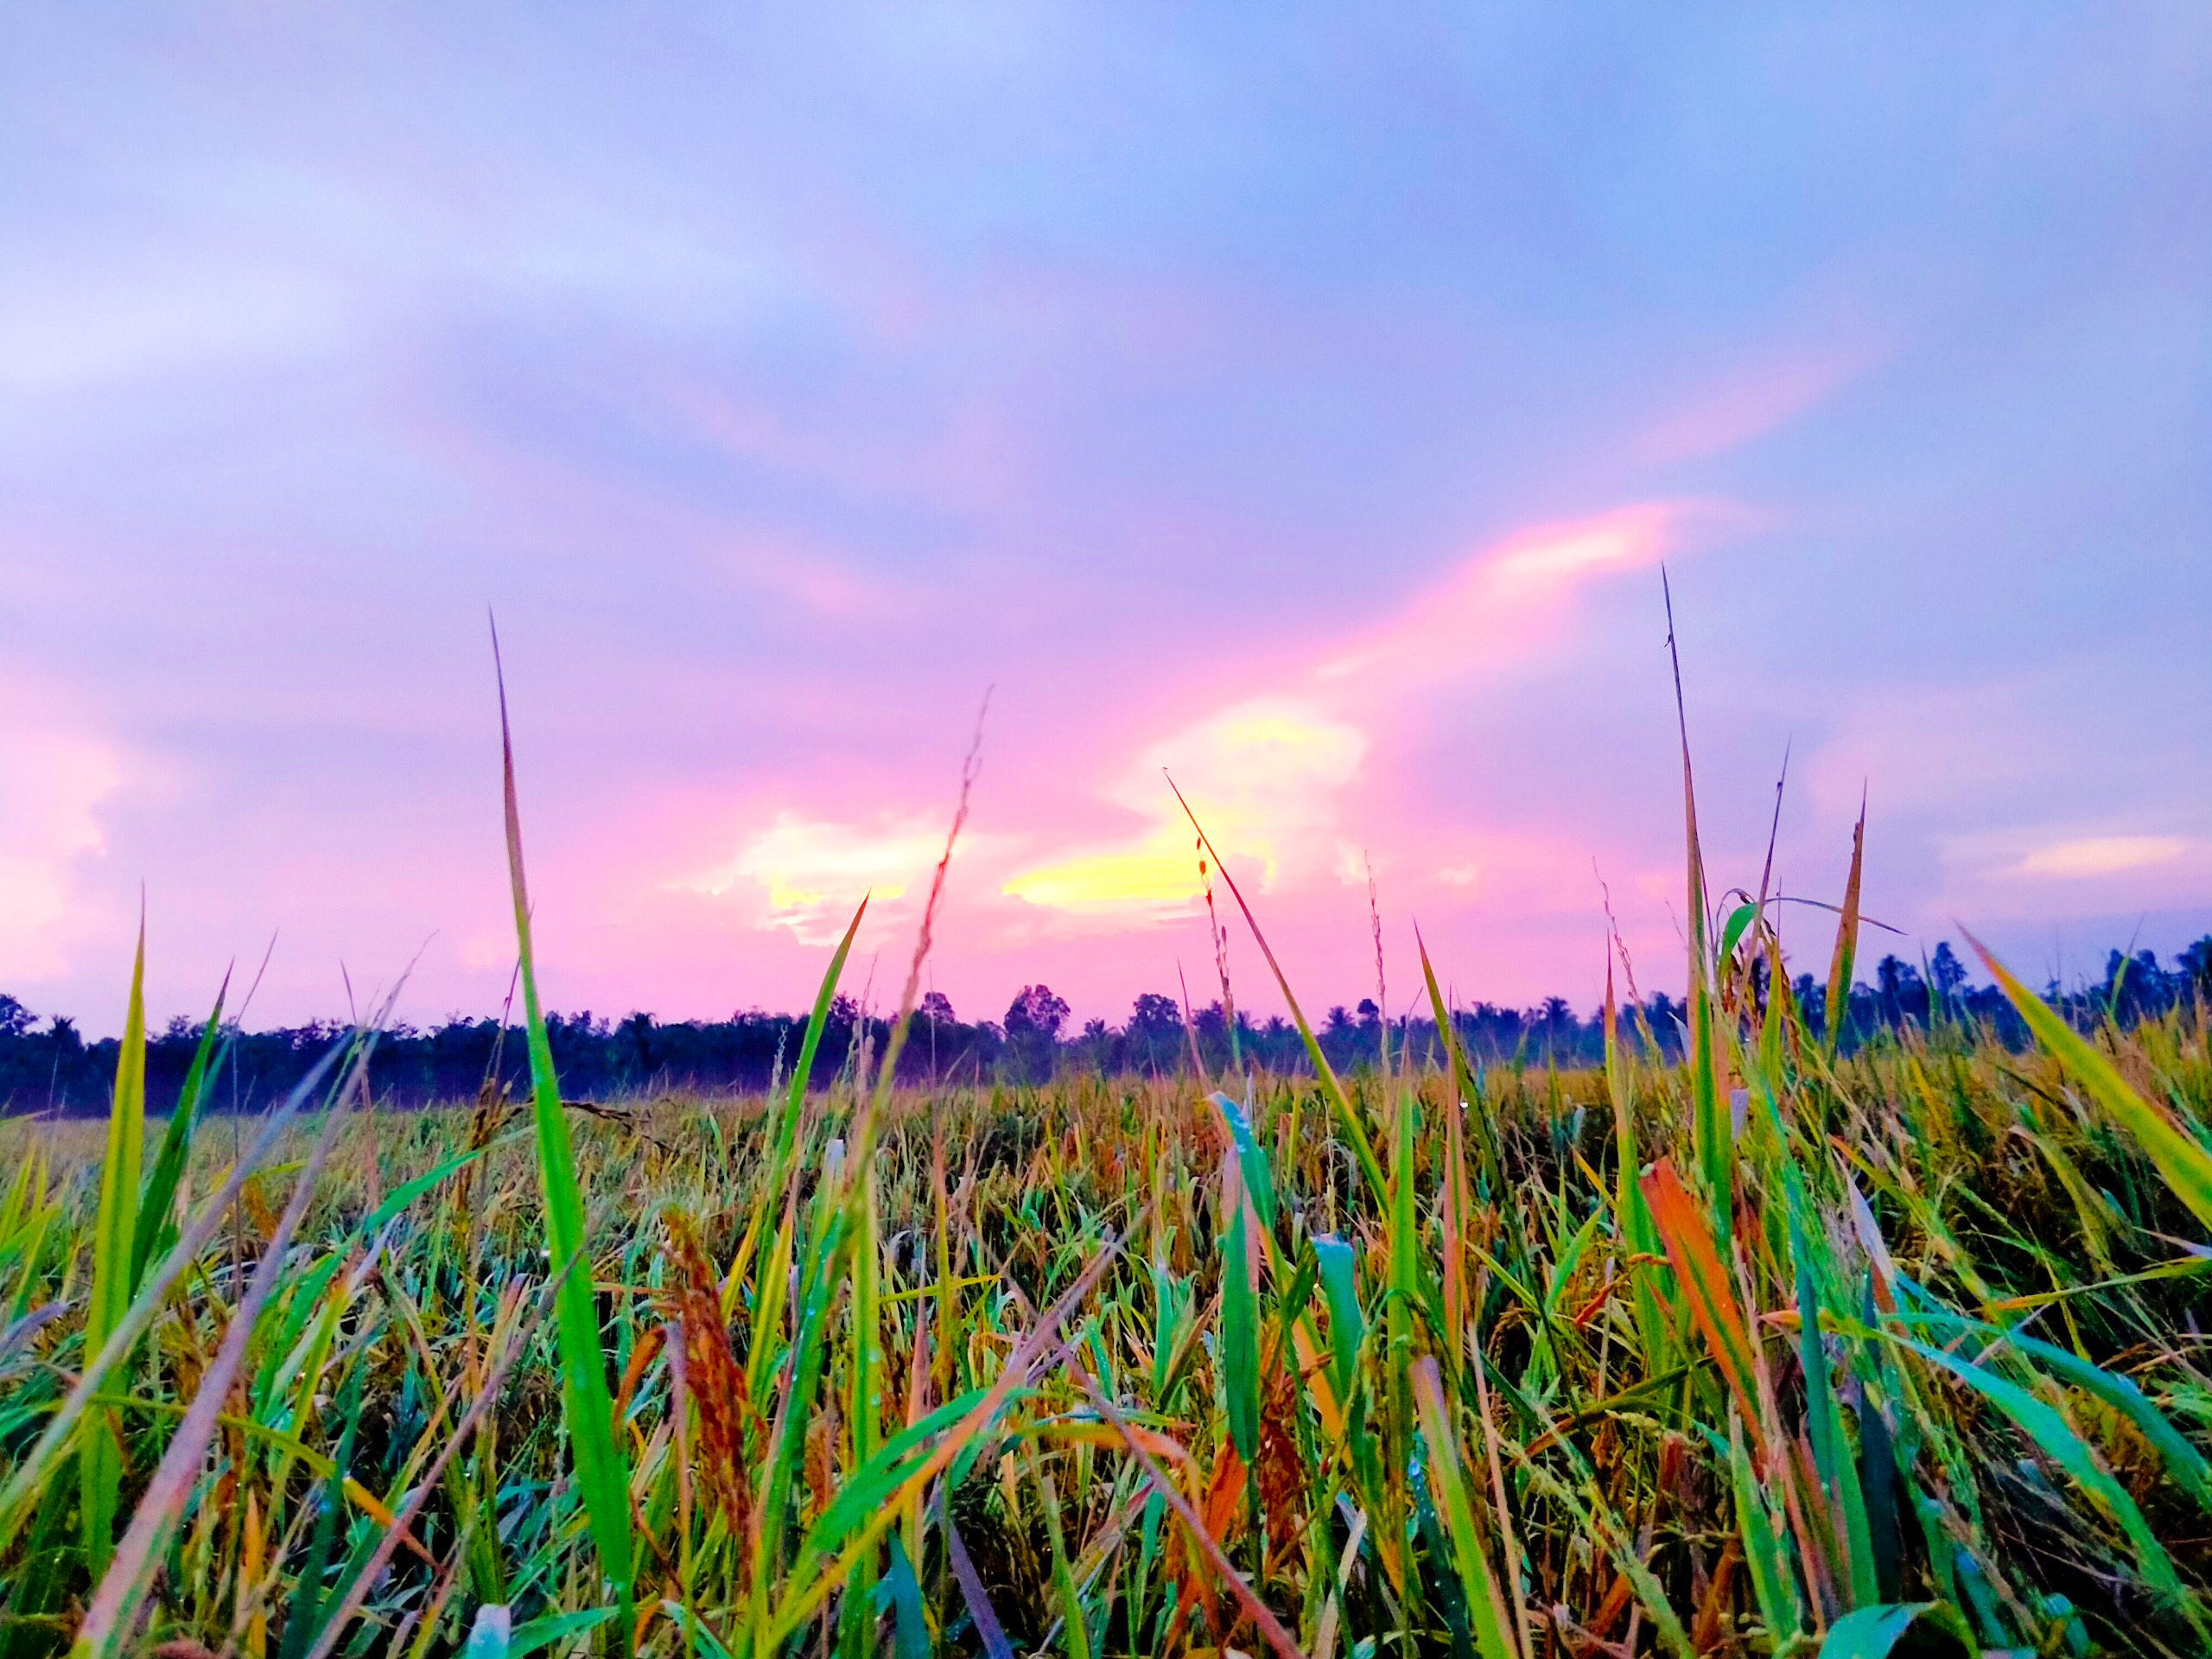 Hãy cùng chiêm ngưỡng cánh đồng lúa bạt ngàn ngập tràn màu xanh mơn mởn và những đám mây trôi dạt trên trời xanh. Hình ảnh này sẽ cho bạn cảm nhận được vẻ đẹp hoang sơ, tinh khôi của quê hương Việt Nam.